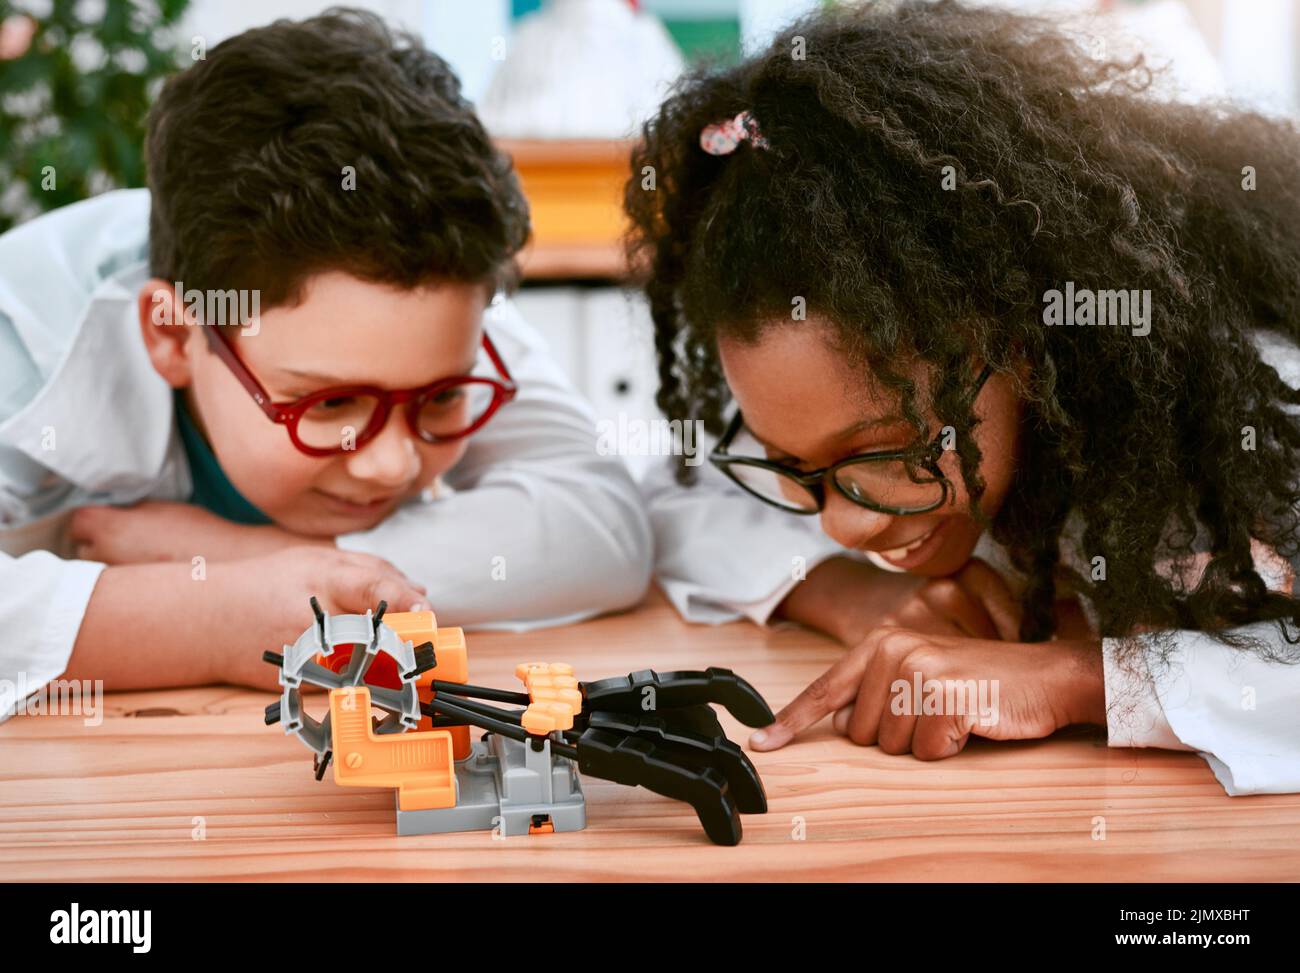 Vamos a ver si funciona. Un adorable niño y niña construyendo un robot en clase de ciencias en la escuela. Foto de stock